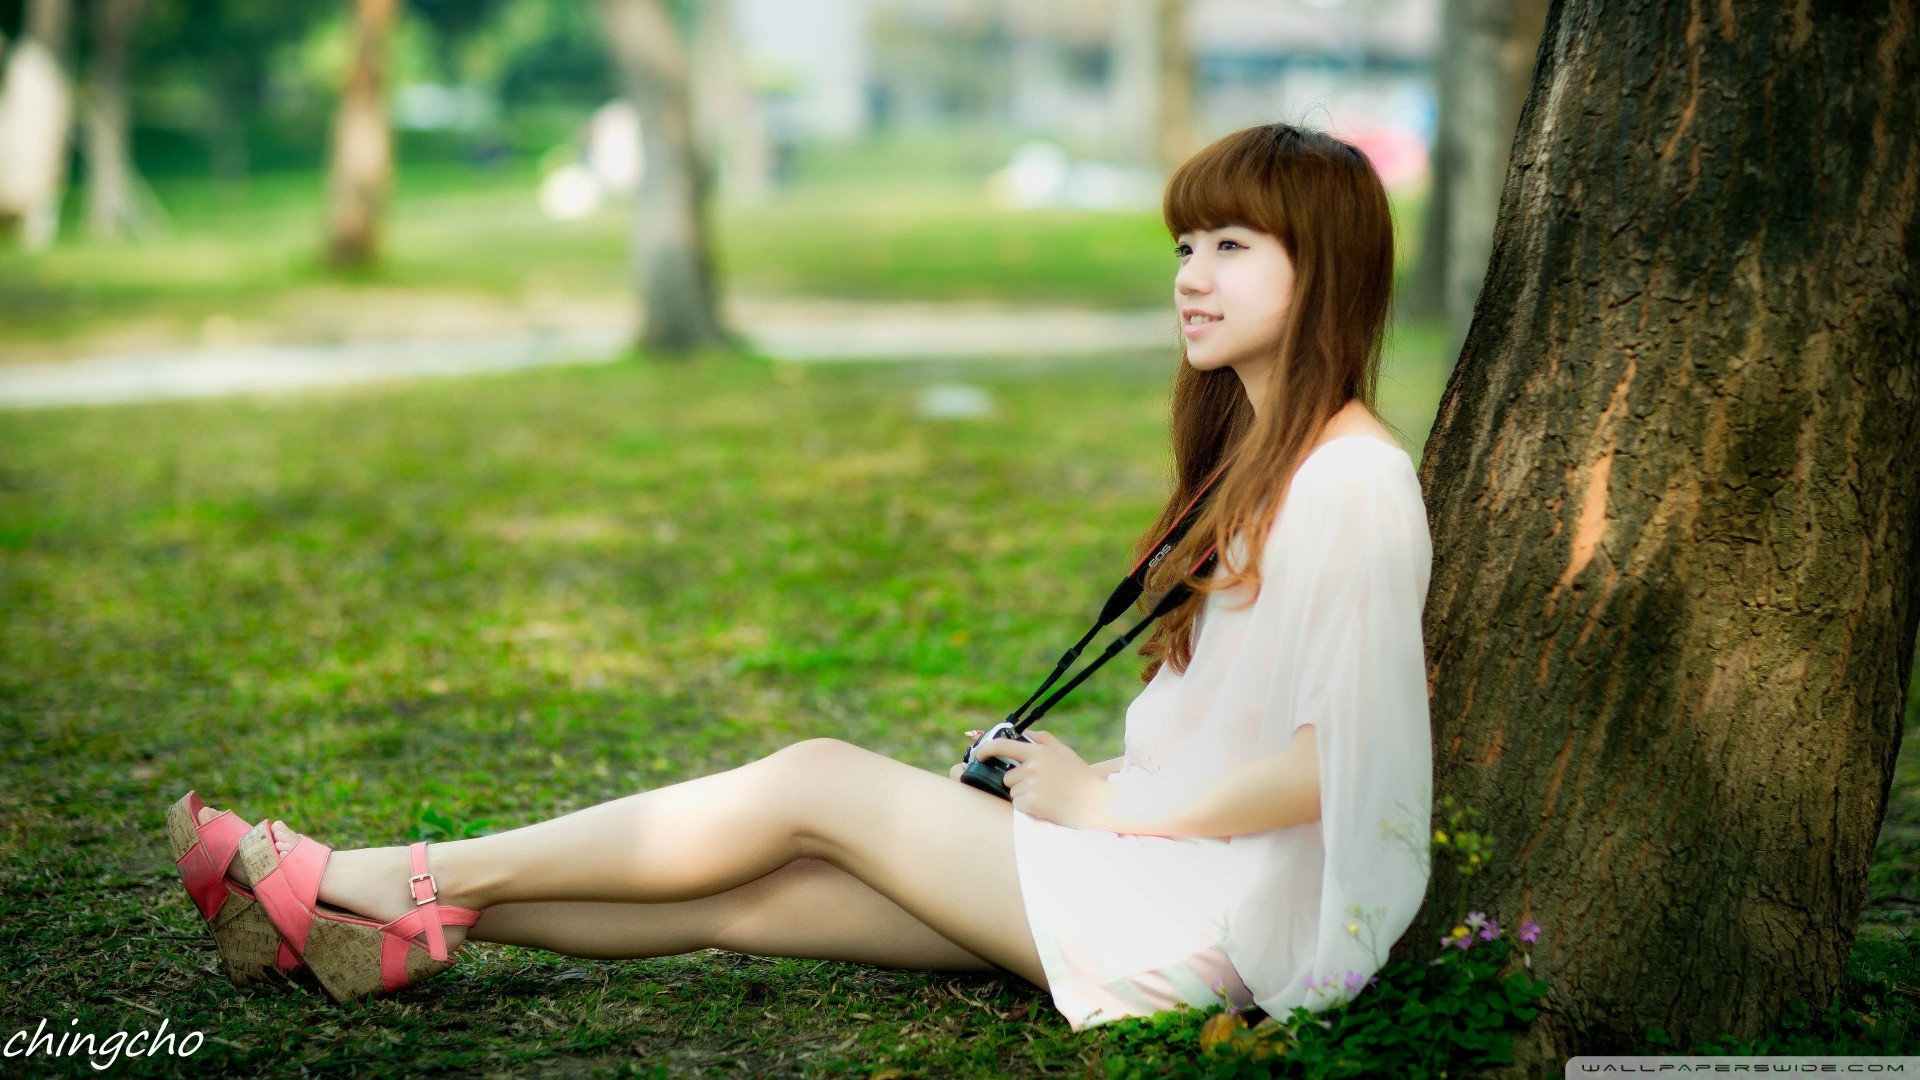 Women Asian Brunette Long Hair Profile White Dress Platform Shoes Smiling Women Outdoors Chingcho 1920x1080